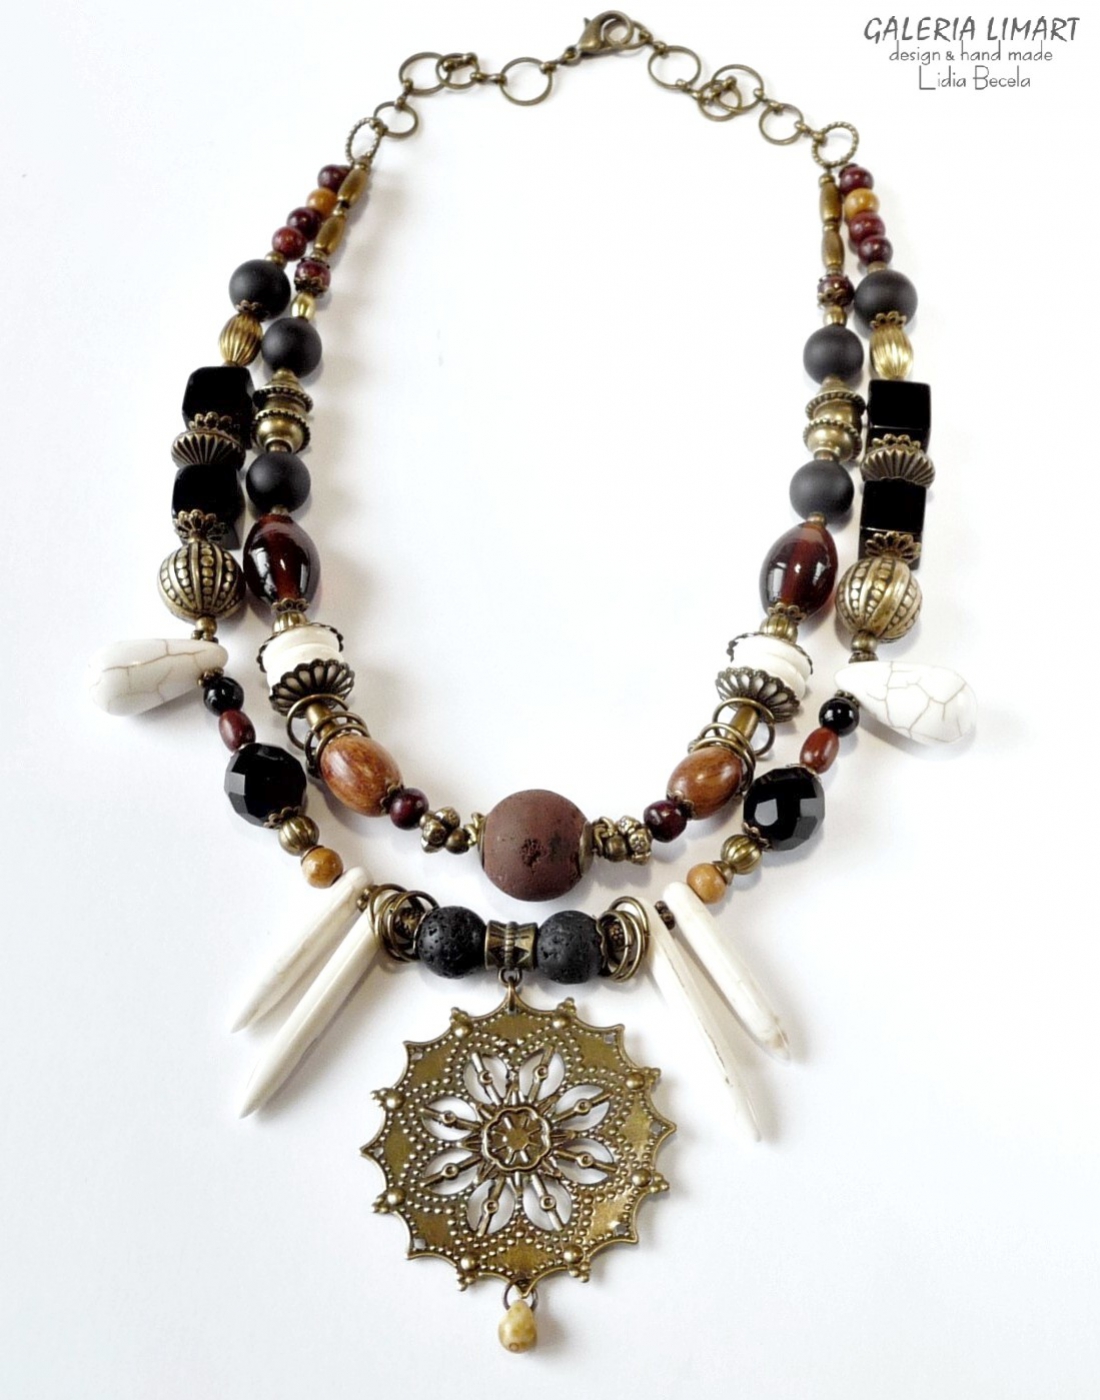 jedyna w swoim rodzaju kompozycja okazałego naszyjnika w duchu biżuterii etnicznej zainspirowanej cudną biżuterią afrykańską